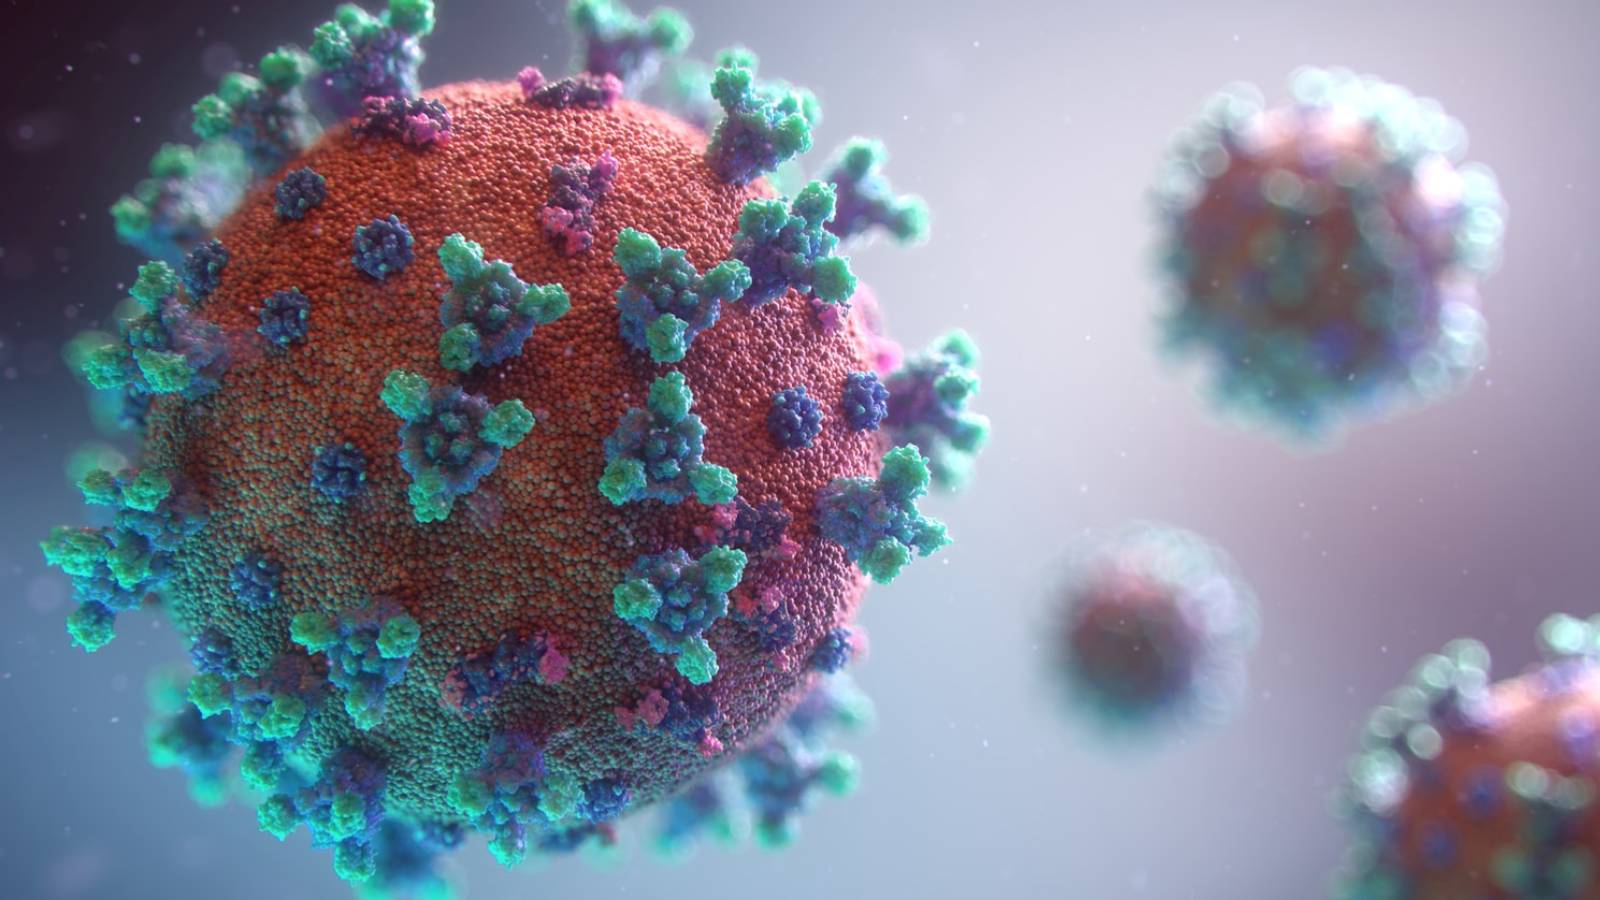 Coronavirus Roemenië vaccineert morgen dagelijks 20.000 mensen